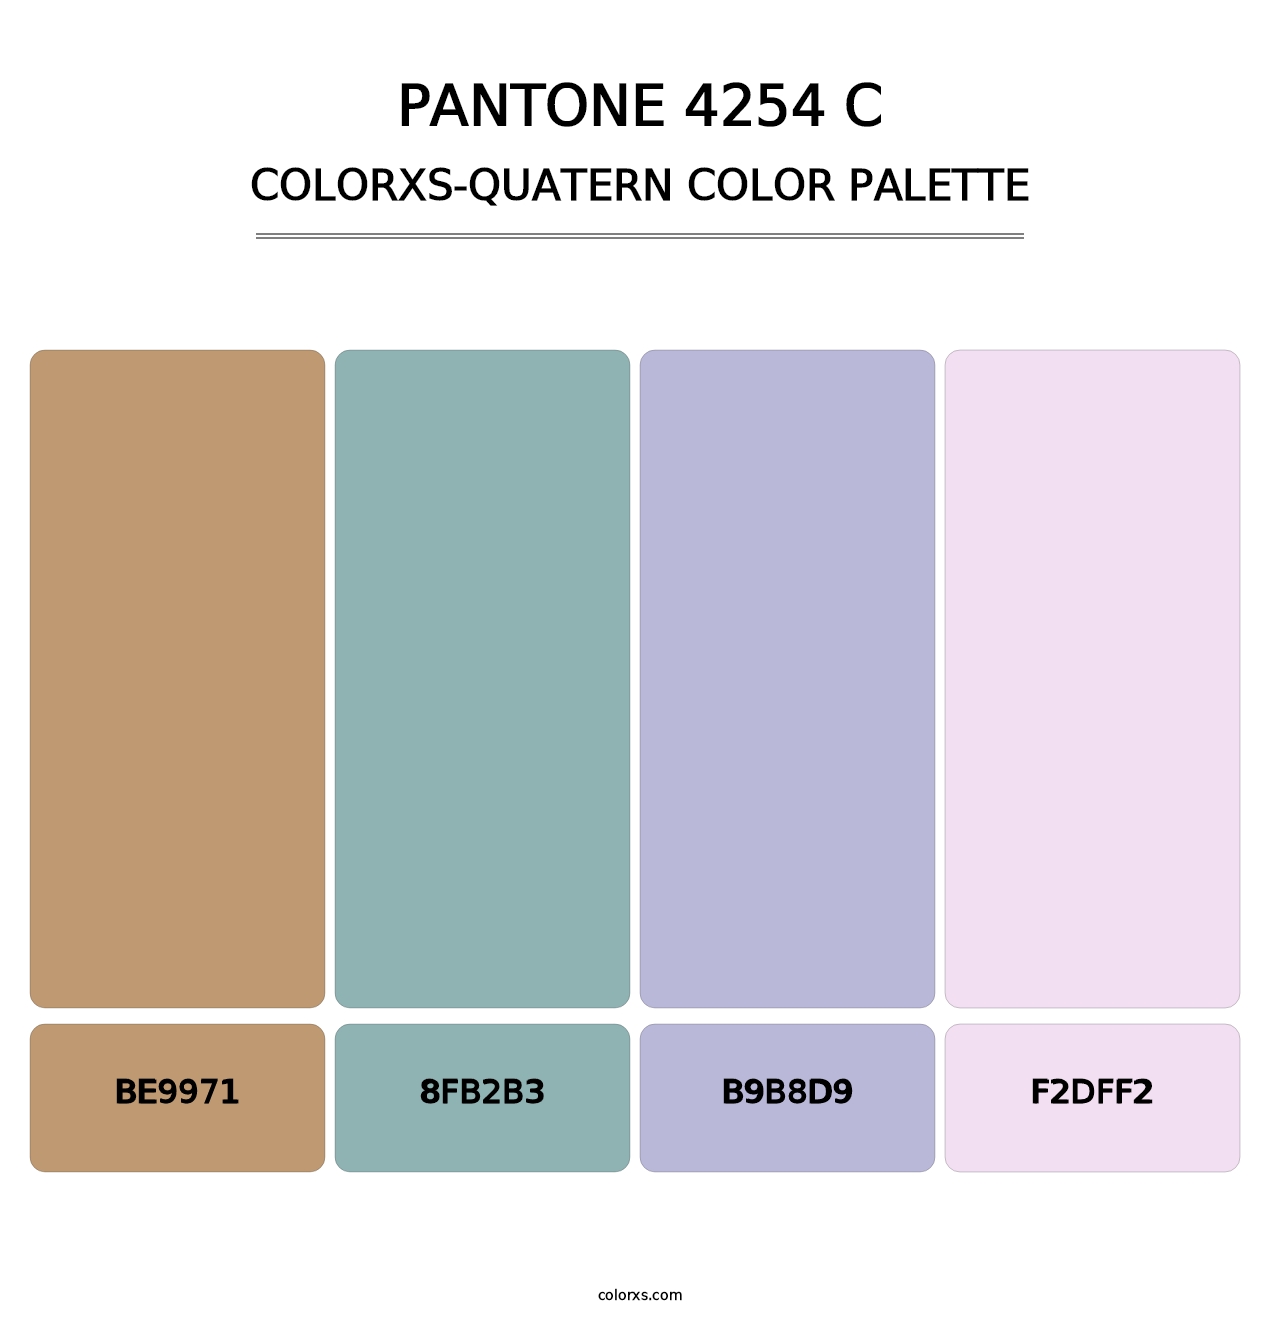 PANTONE 4254 C - Colorxs Quatern Palette